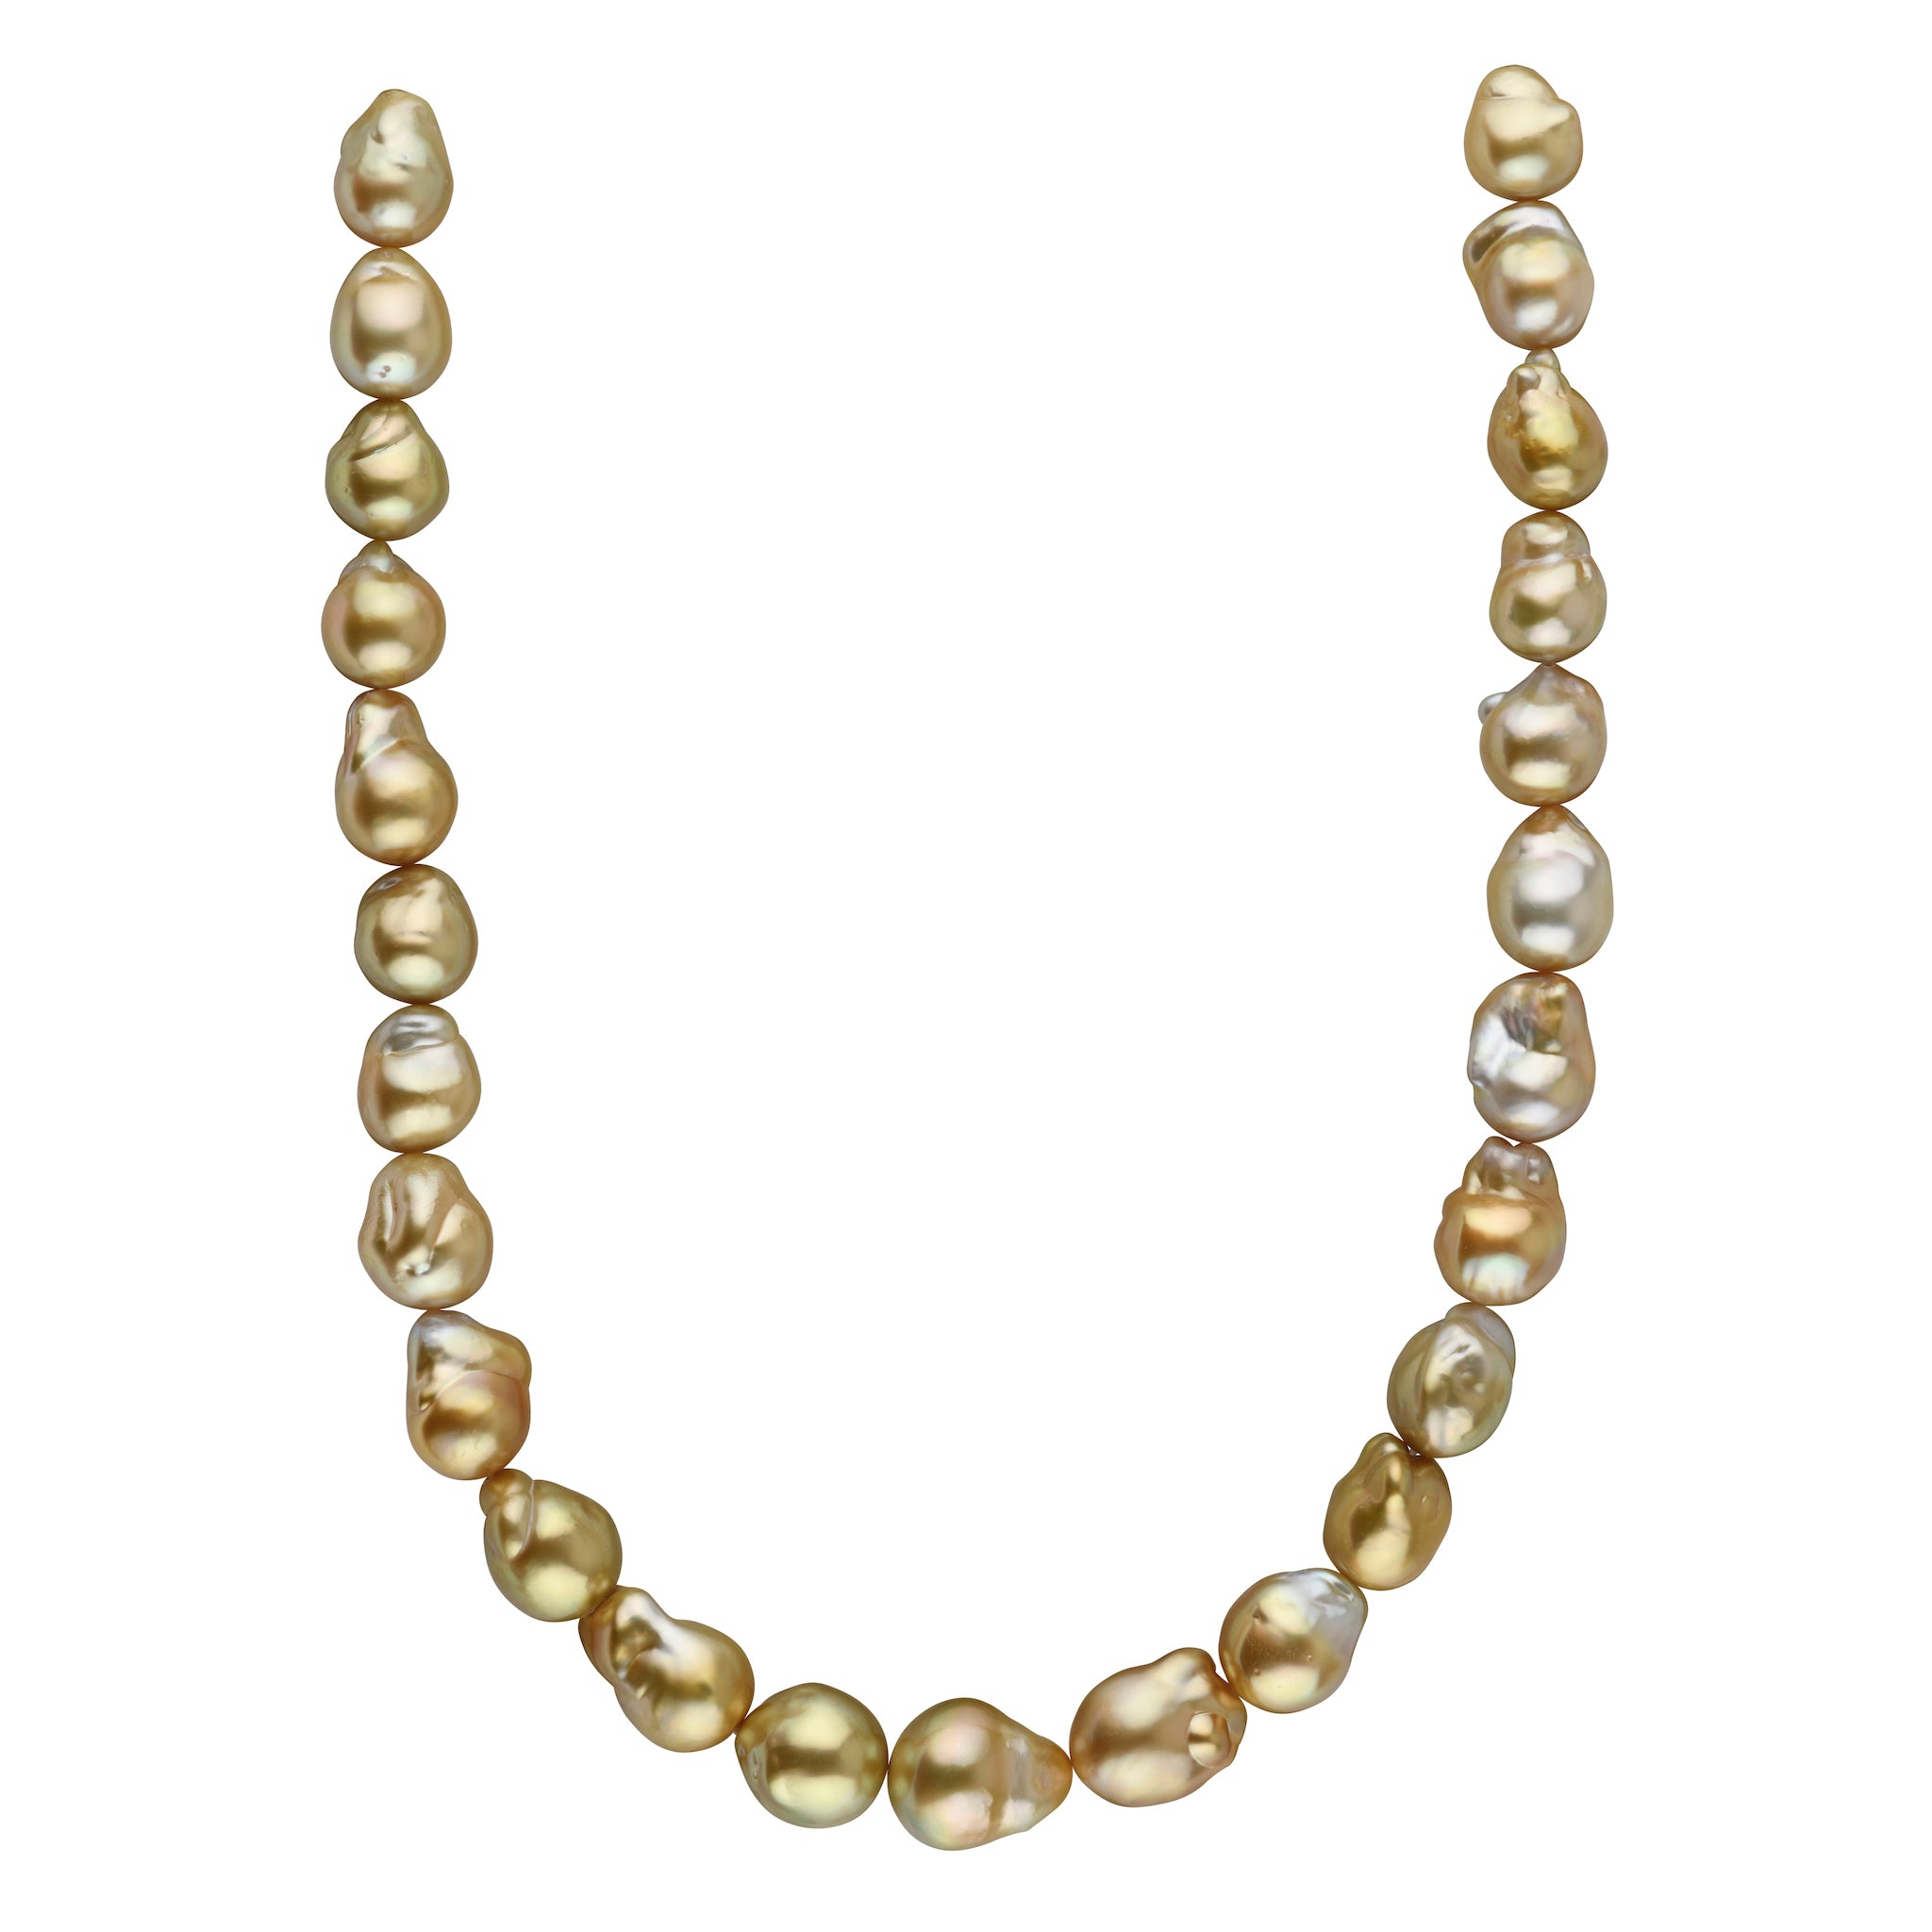 13 x 4mm - Fancy Multi Colored Golden Pearl & Keshi Pearl Necklace - 34  inch - Edward Warren Jewelers